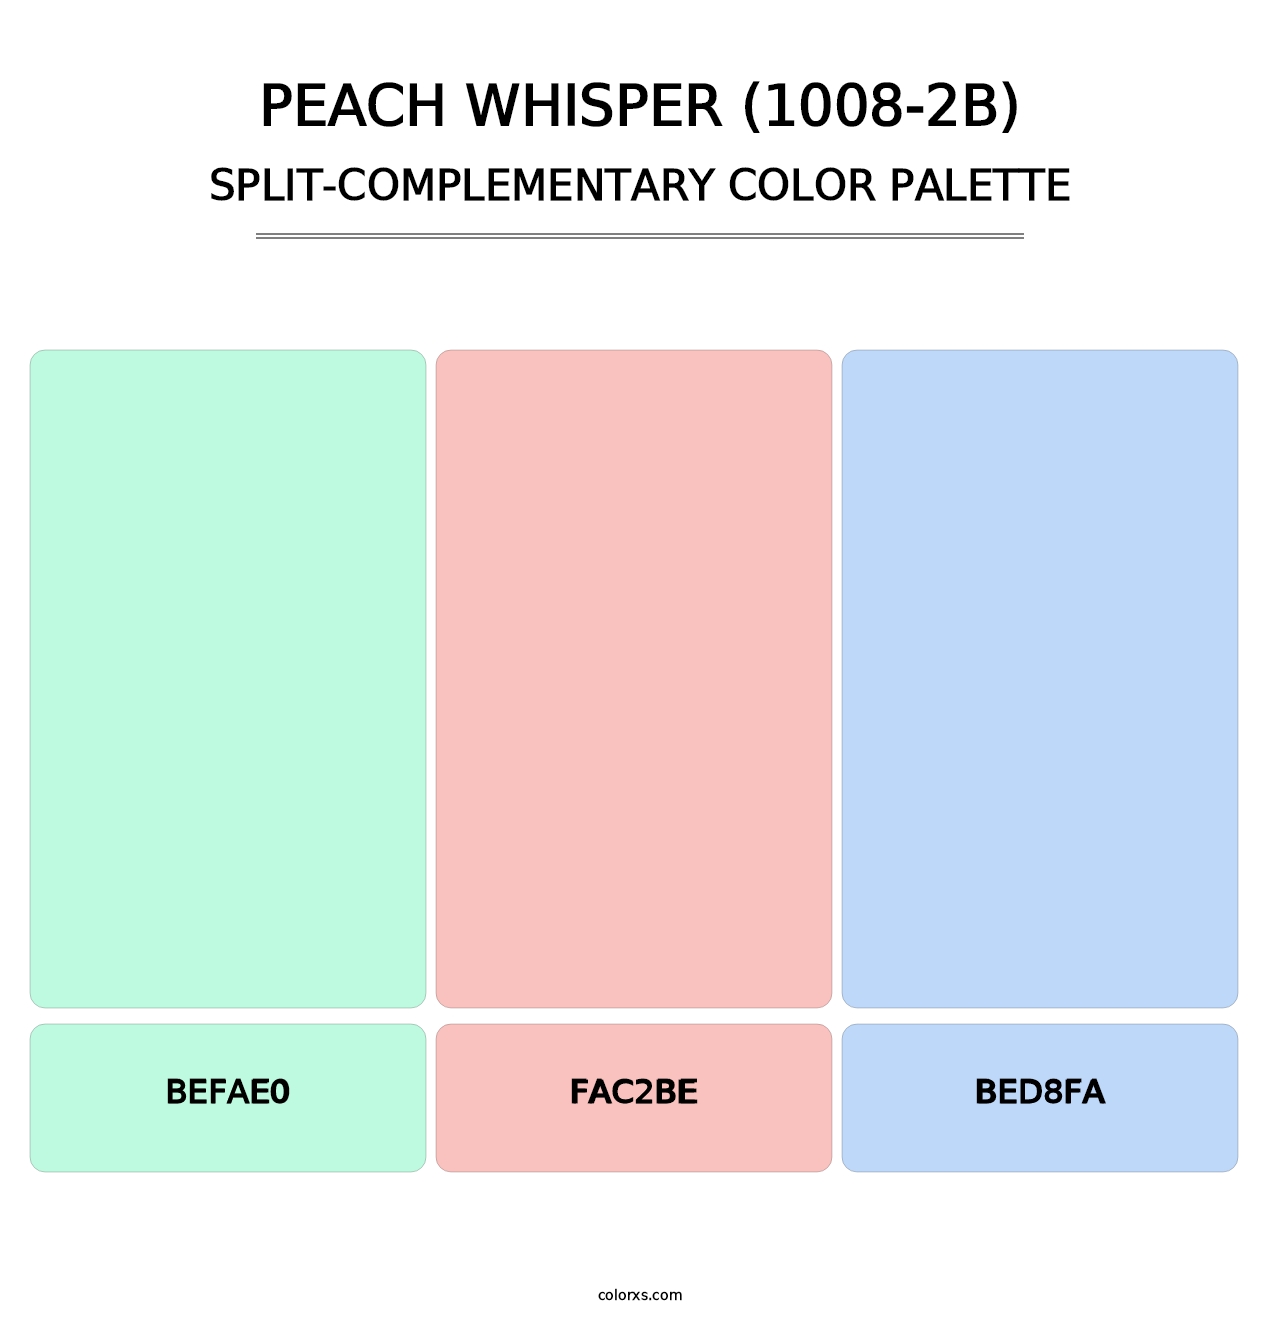 Peach Whisper (1008-2B) - Split-Complementary Color Palette